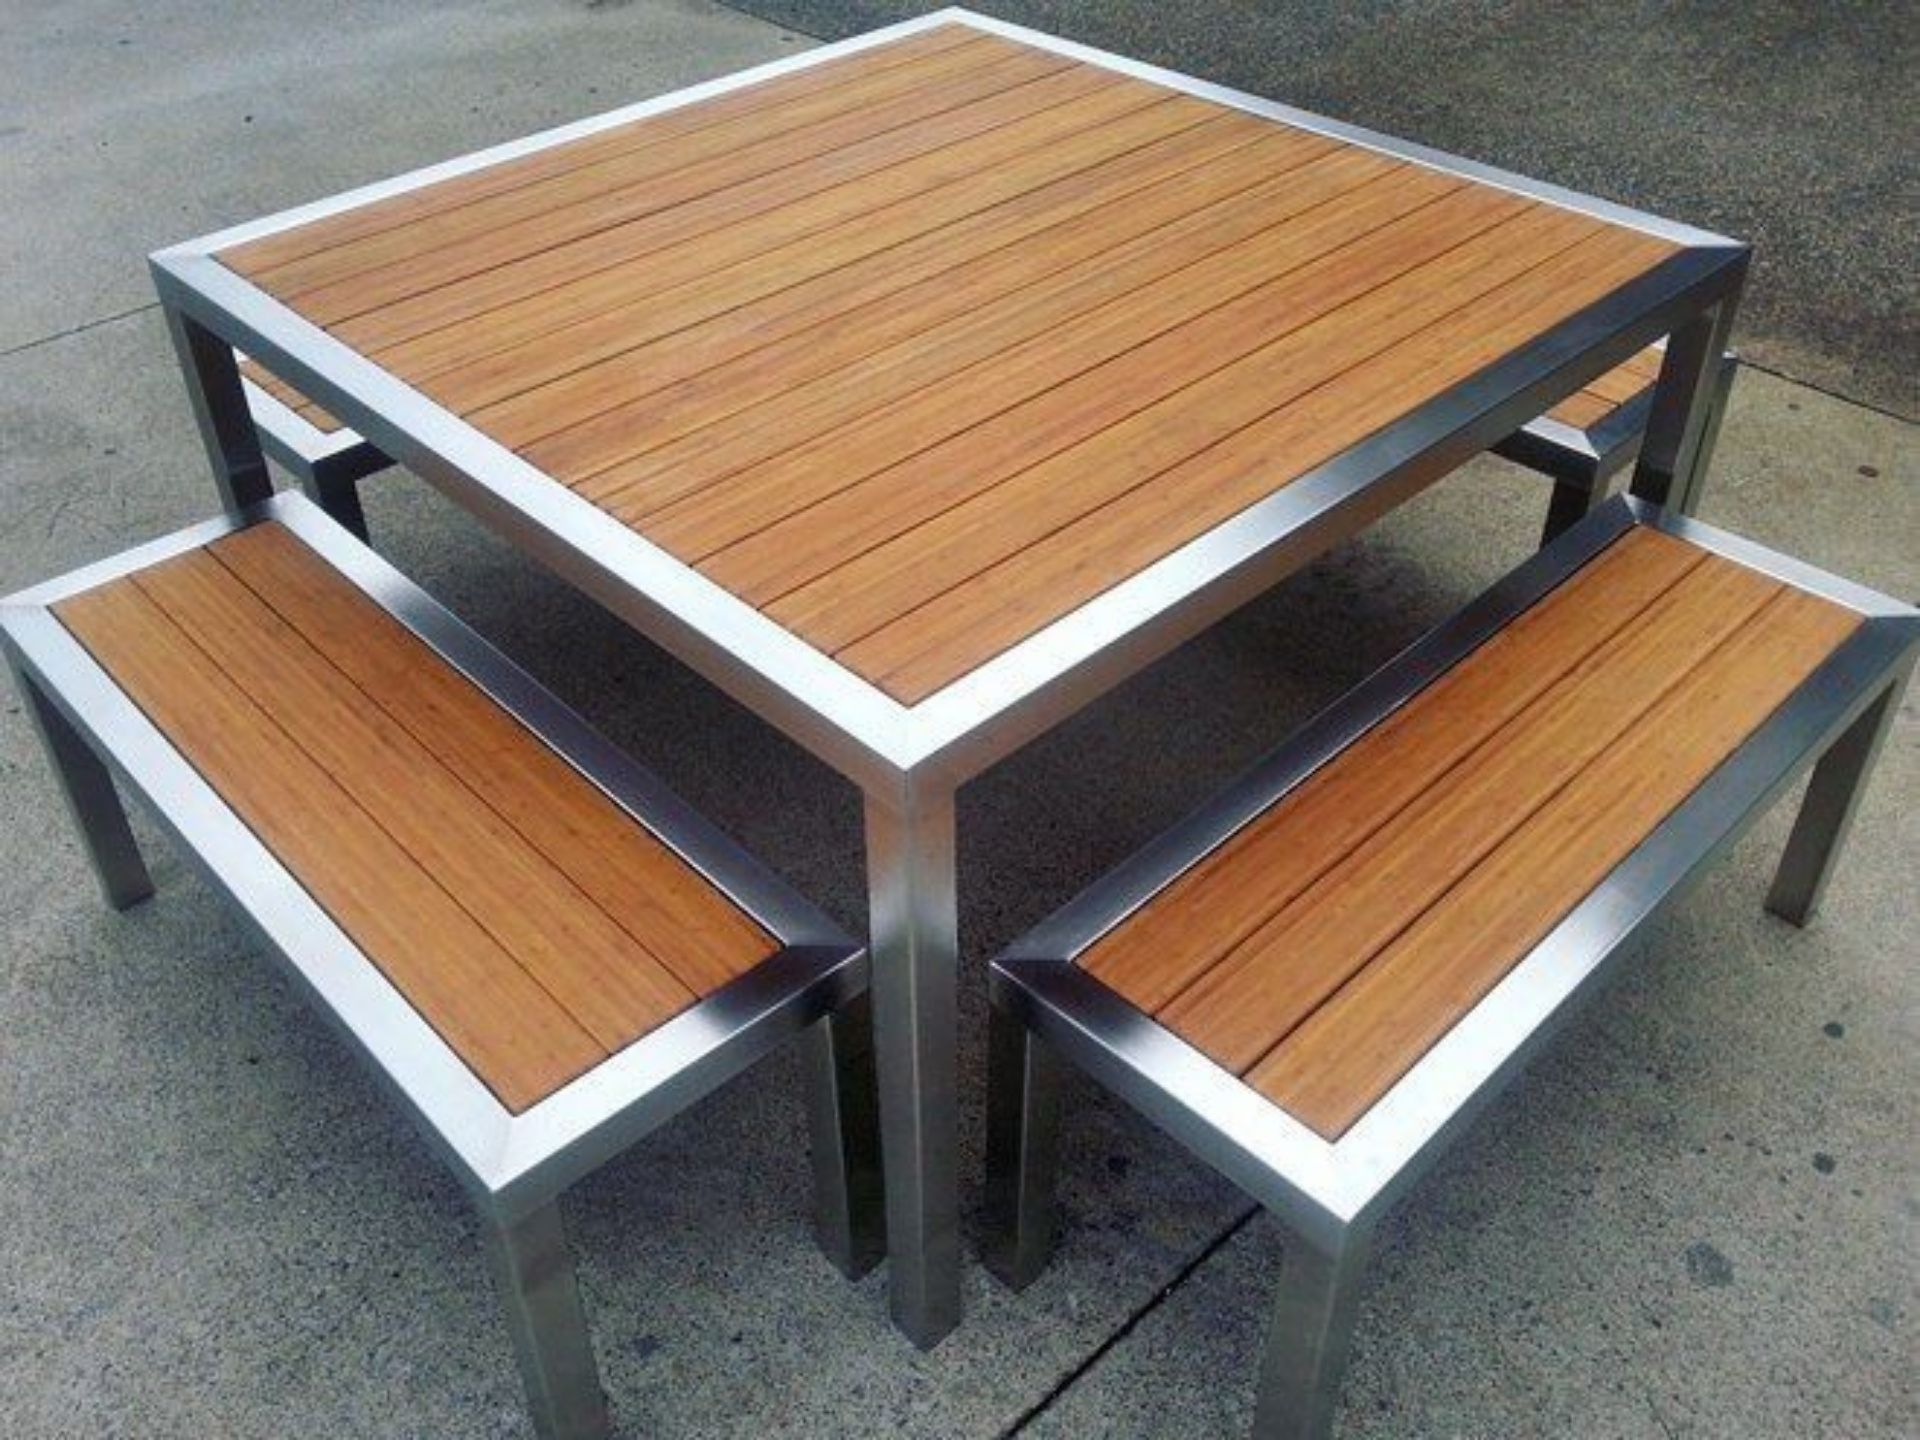 стол с металлическим покрытием